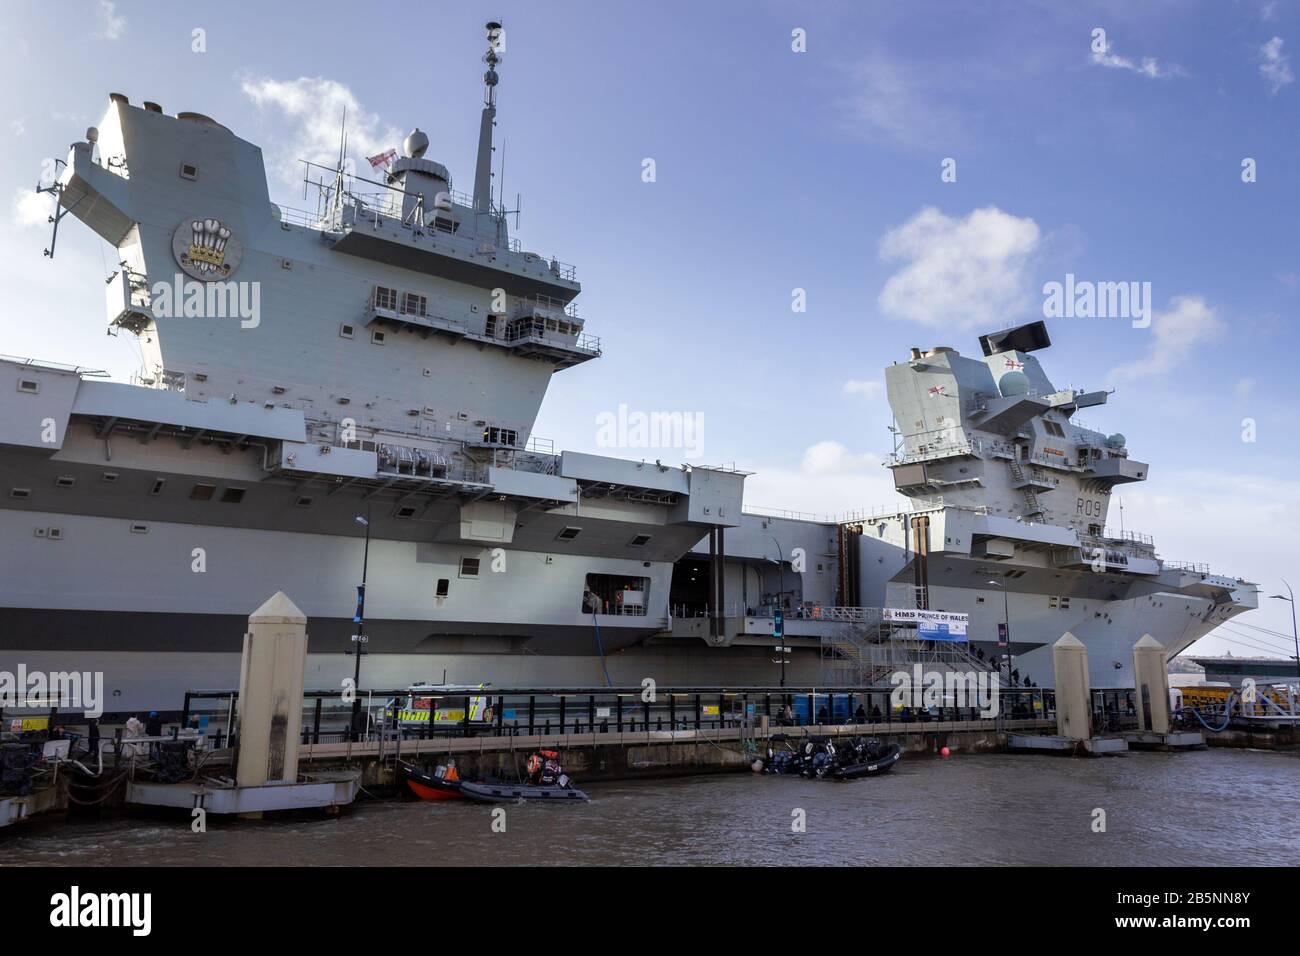 Portaaviones HMS Prince of Wales en Princes Dock, Liverpool Foto de stock